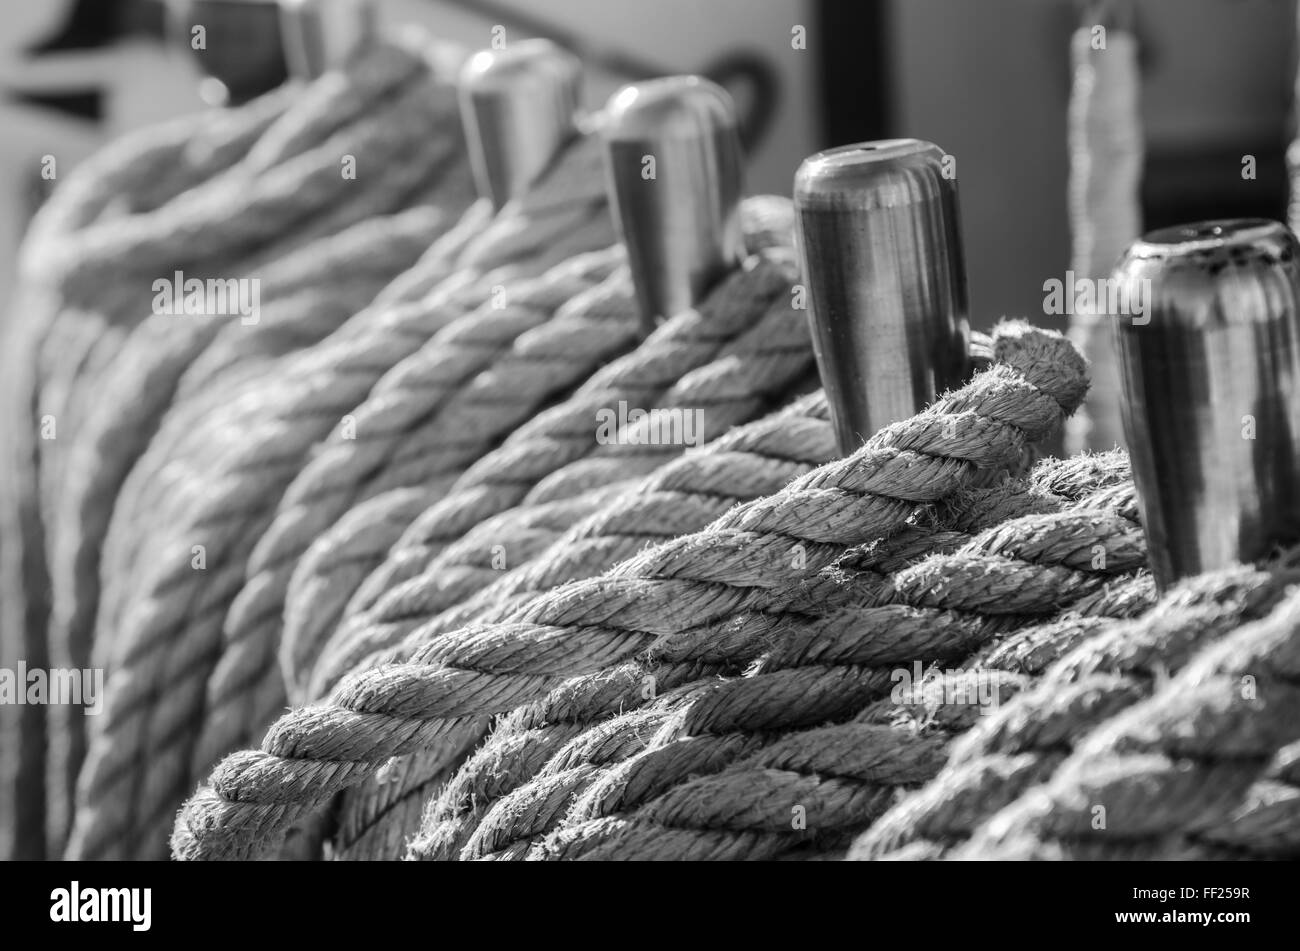 Les cordages tressés dans les baies d'un ancien navire à voile Banque D'Images